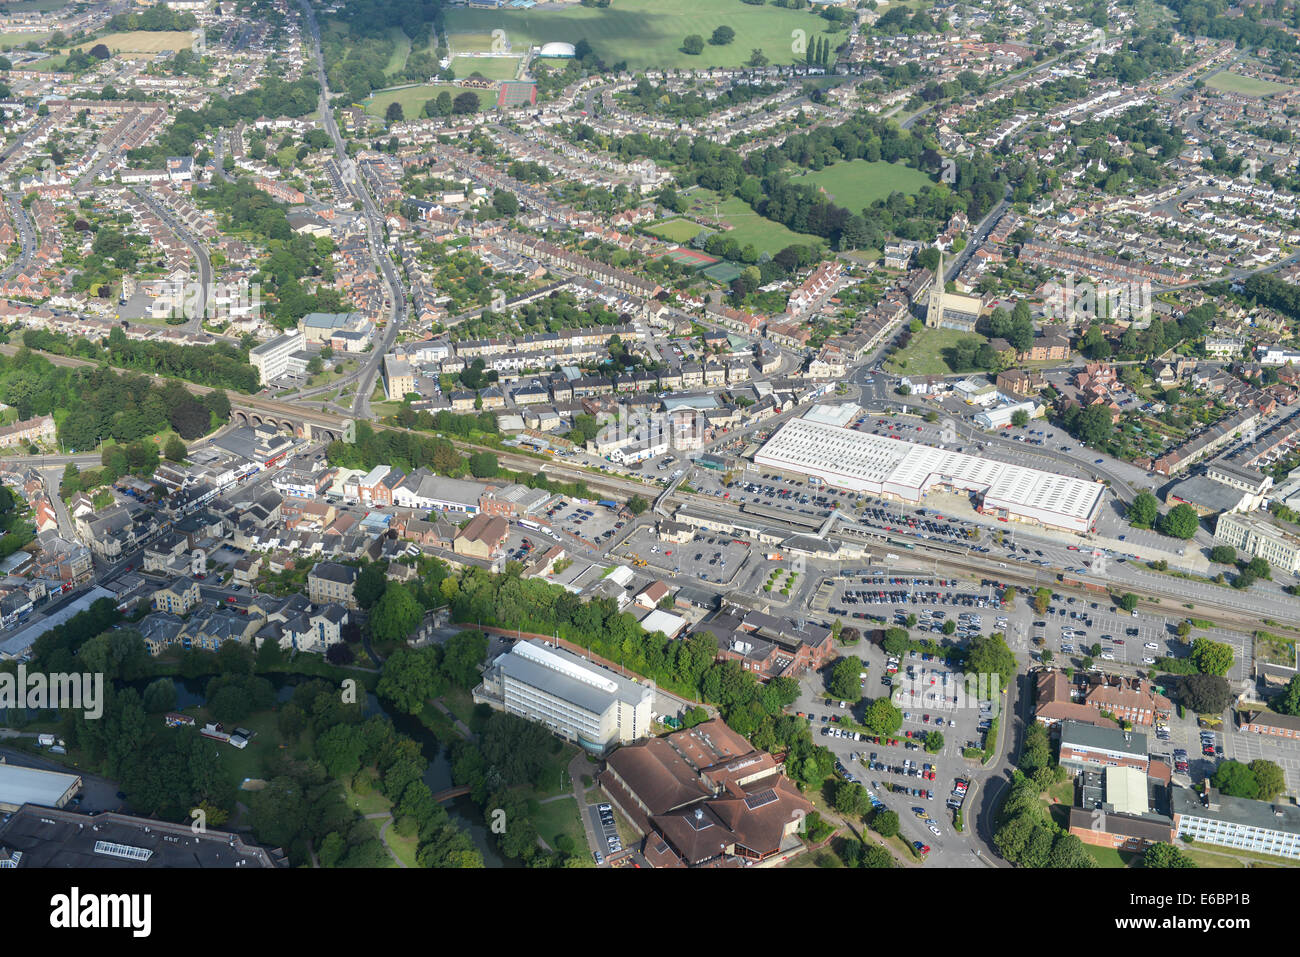 Una veduta aerea di Chippenham nel Wiltshire, Regno Unito, mostrante la zona attorno alla stazione ferroviaria e al centro della città. Foto Stock